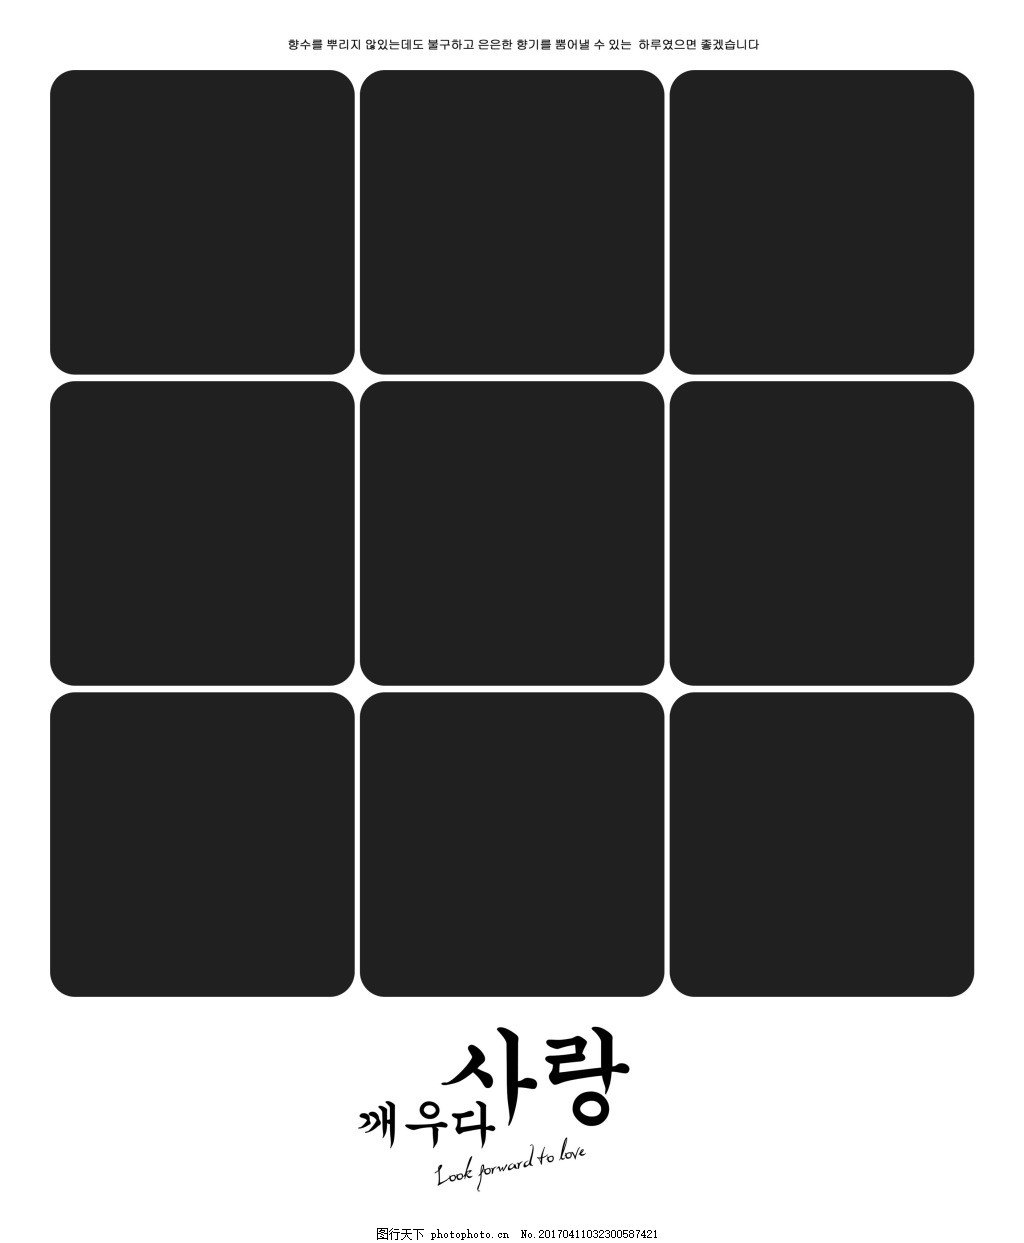 韩式九宫格摄影模板图片